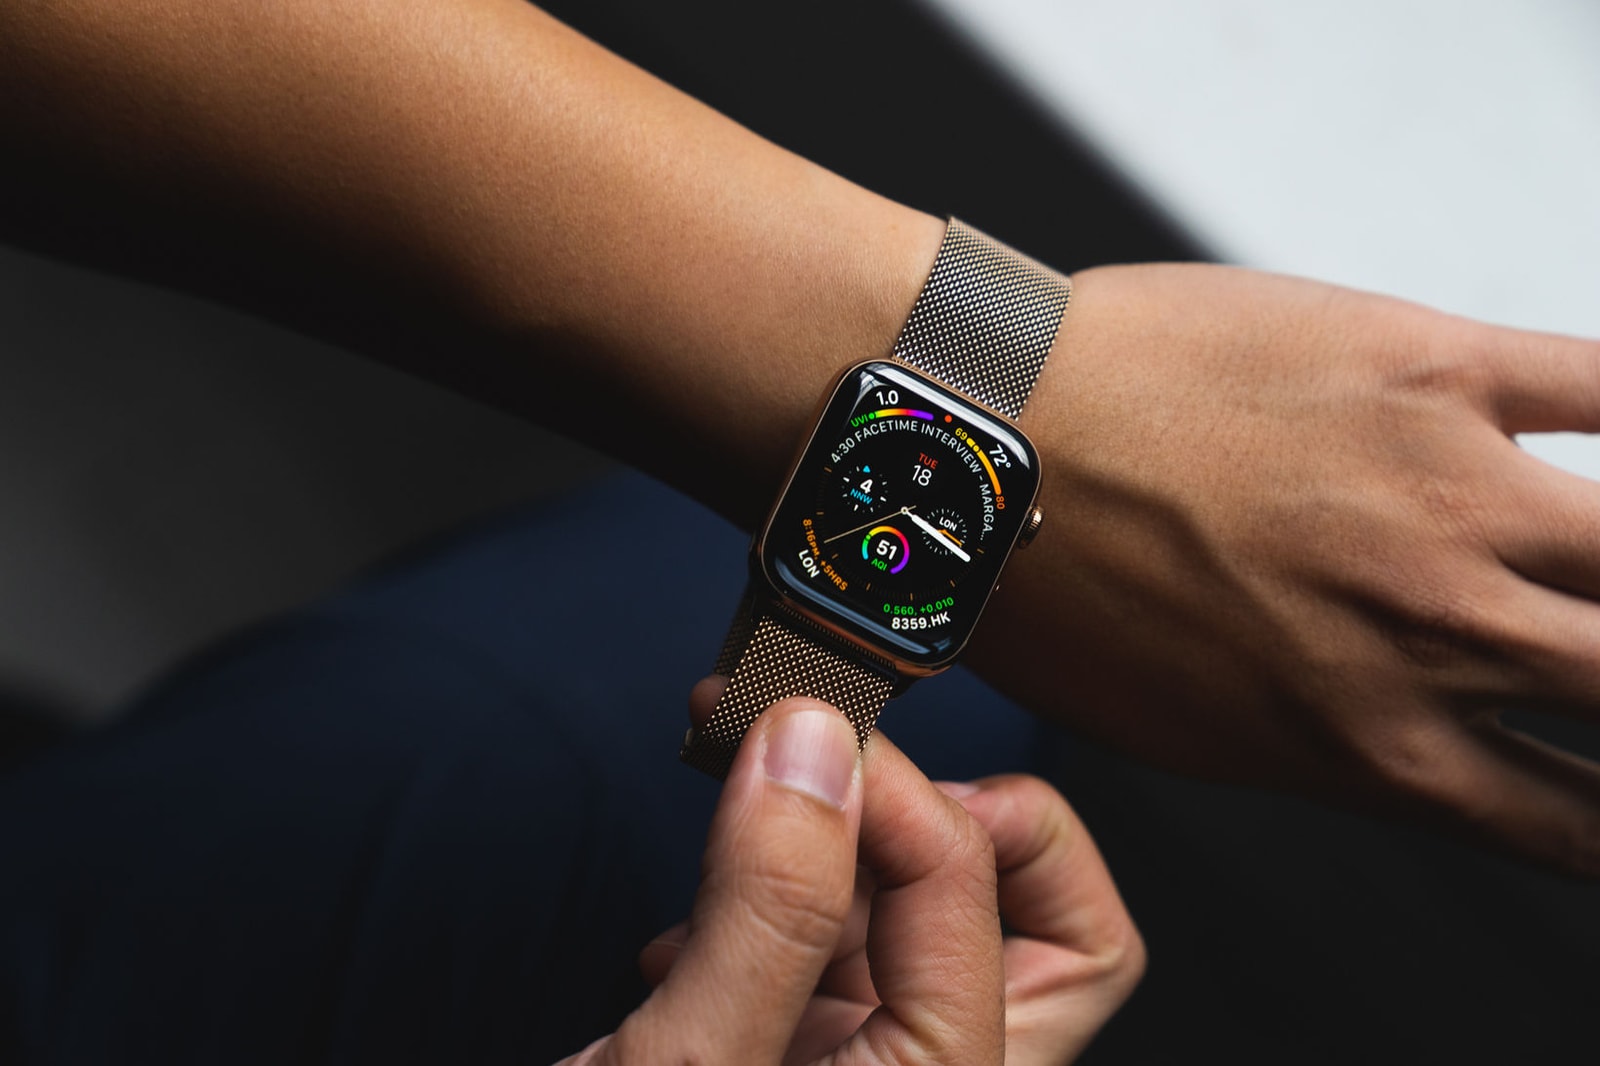 全新金色版 Apple Watch Series 4 及 iPhone XS 細節近賞